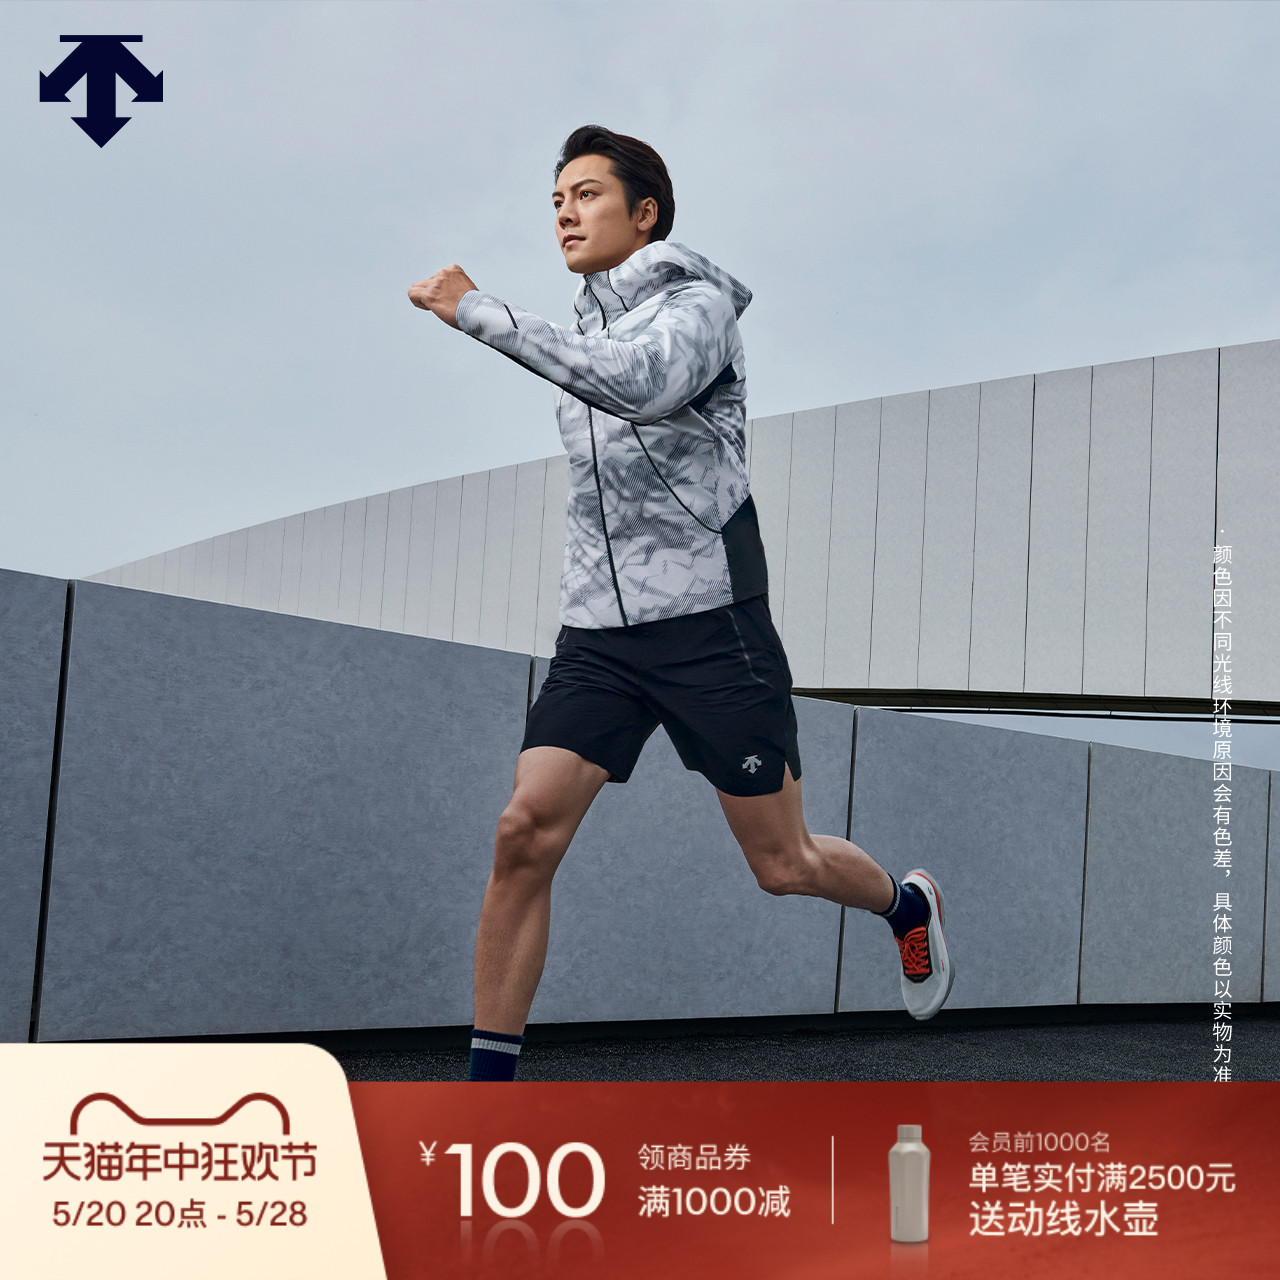 【陈伟霆同款】DESCENTE迪桑特运动健身男士F360透气夜跑短裤新款